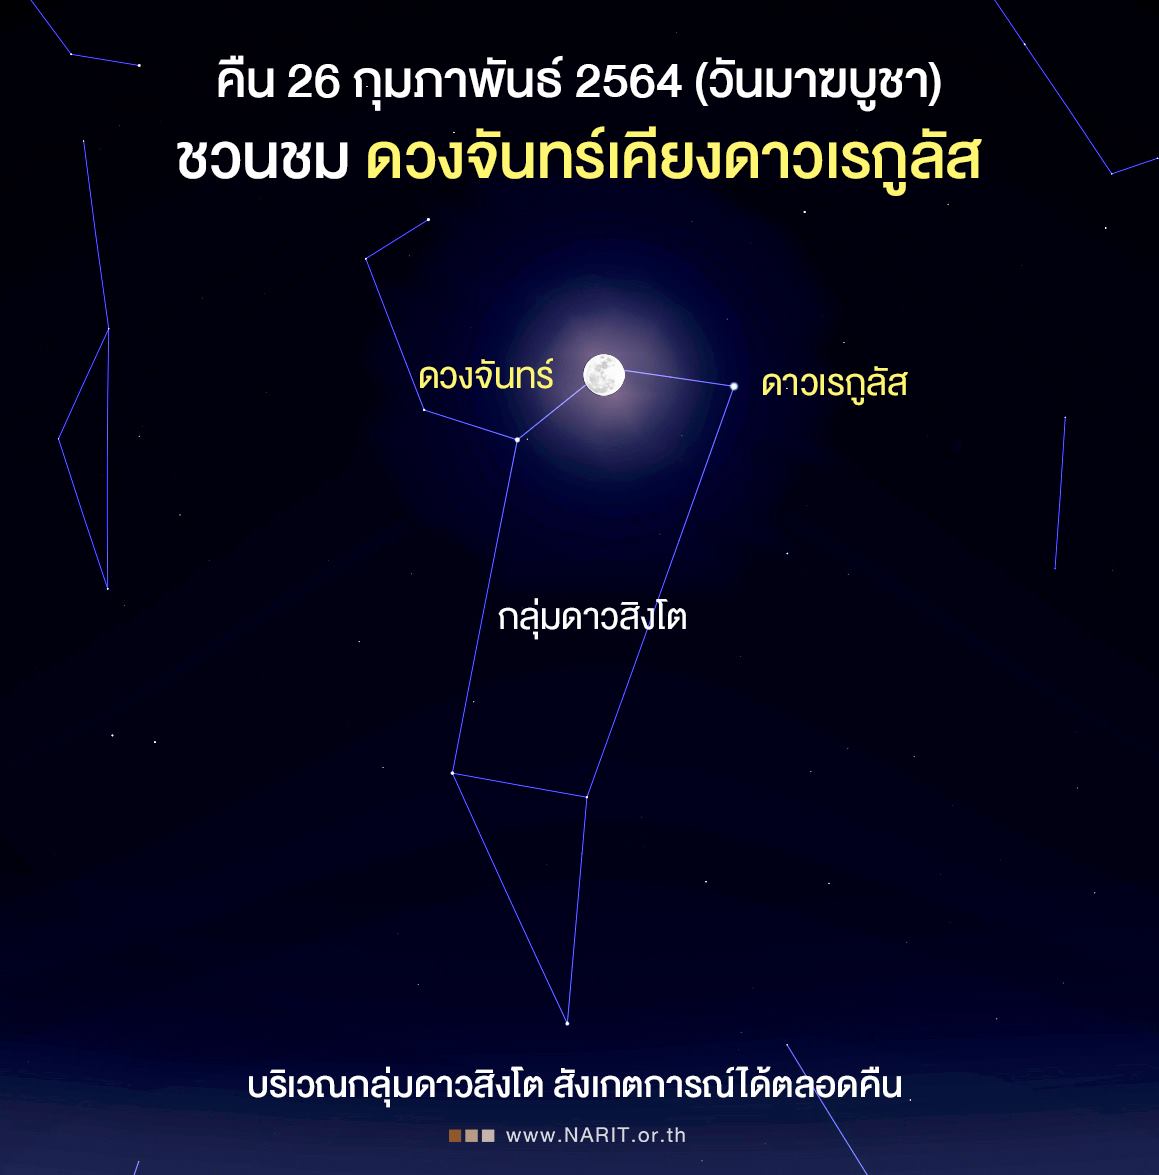 มาฆบูชา ชวนชม ดวงจันทร์เคียงดาวเรกูลัส สังเกตการณ์ได้ตลอดทั้งคืน